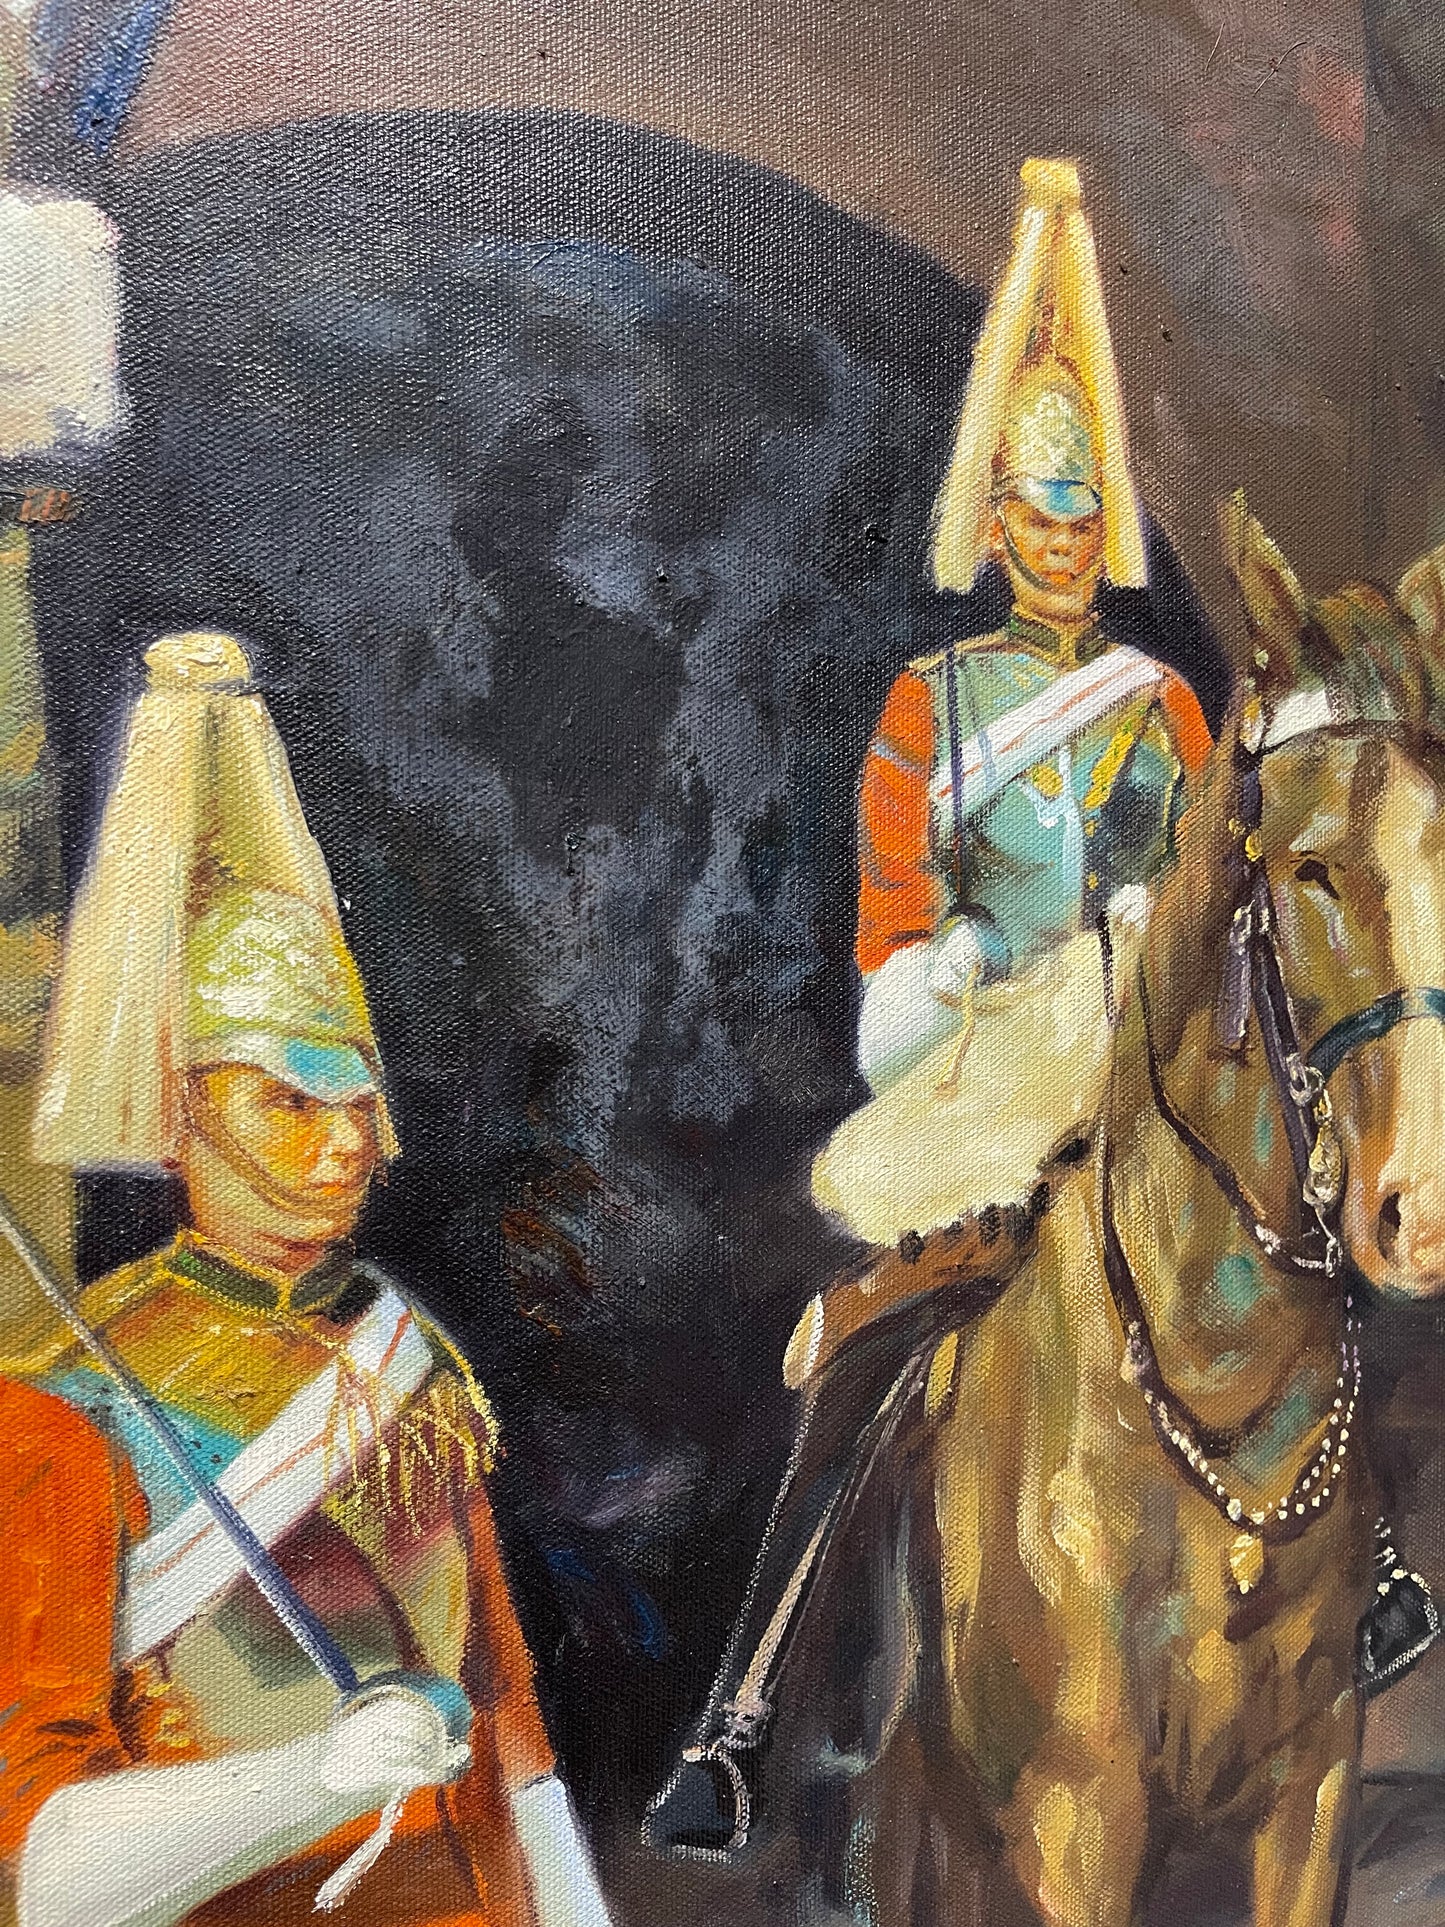 Dipinto a olio degli anni '70 - Guardie a cavallo, St James Palace di Londra